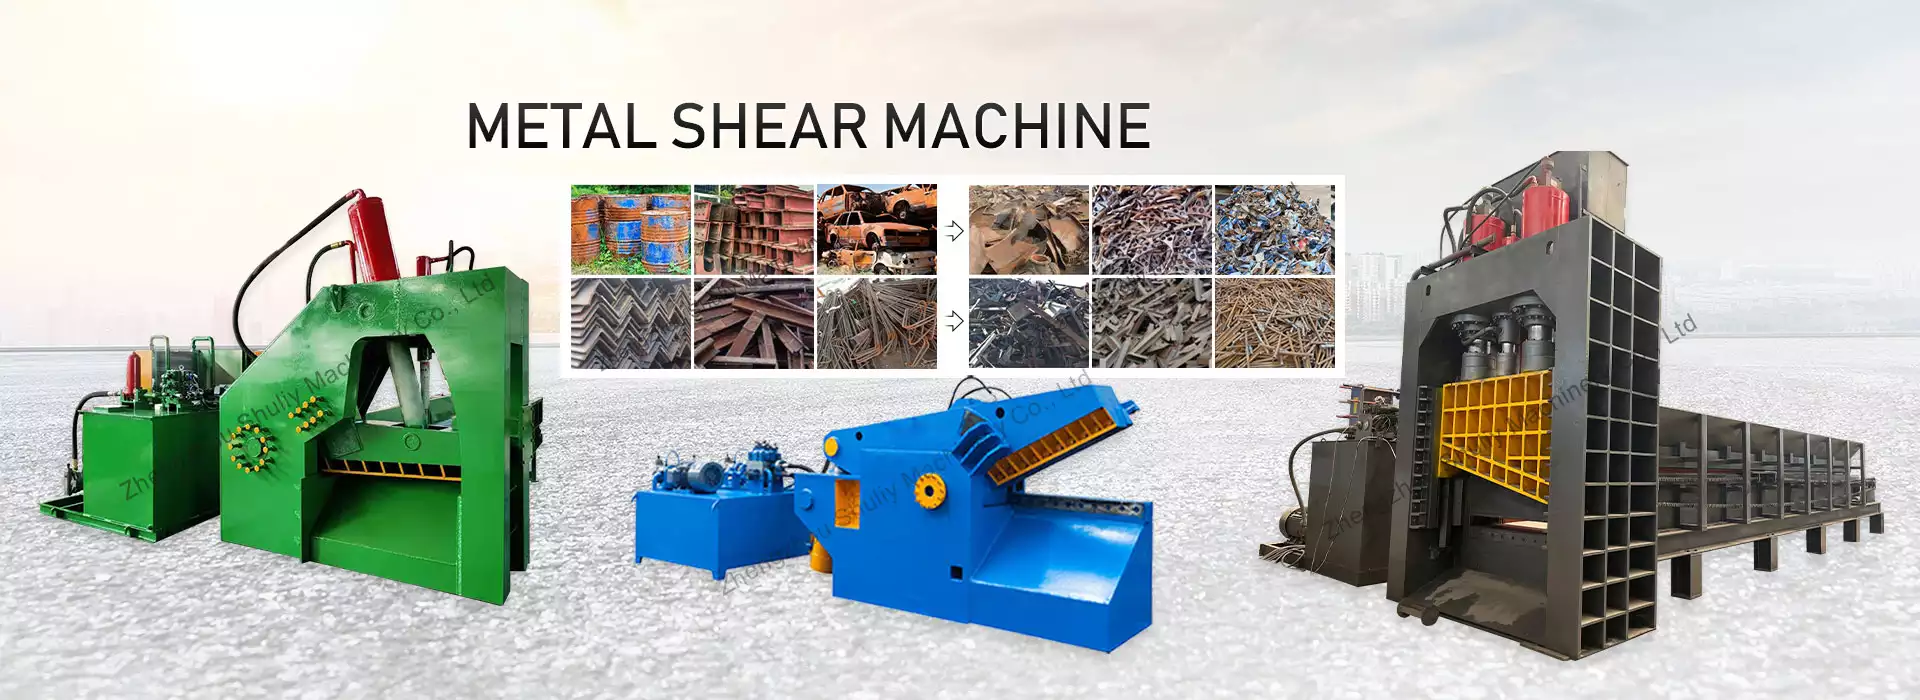 hydraulic metal shear machine